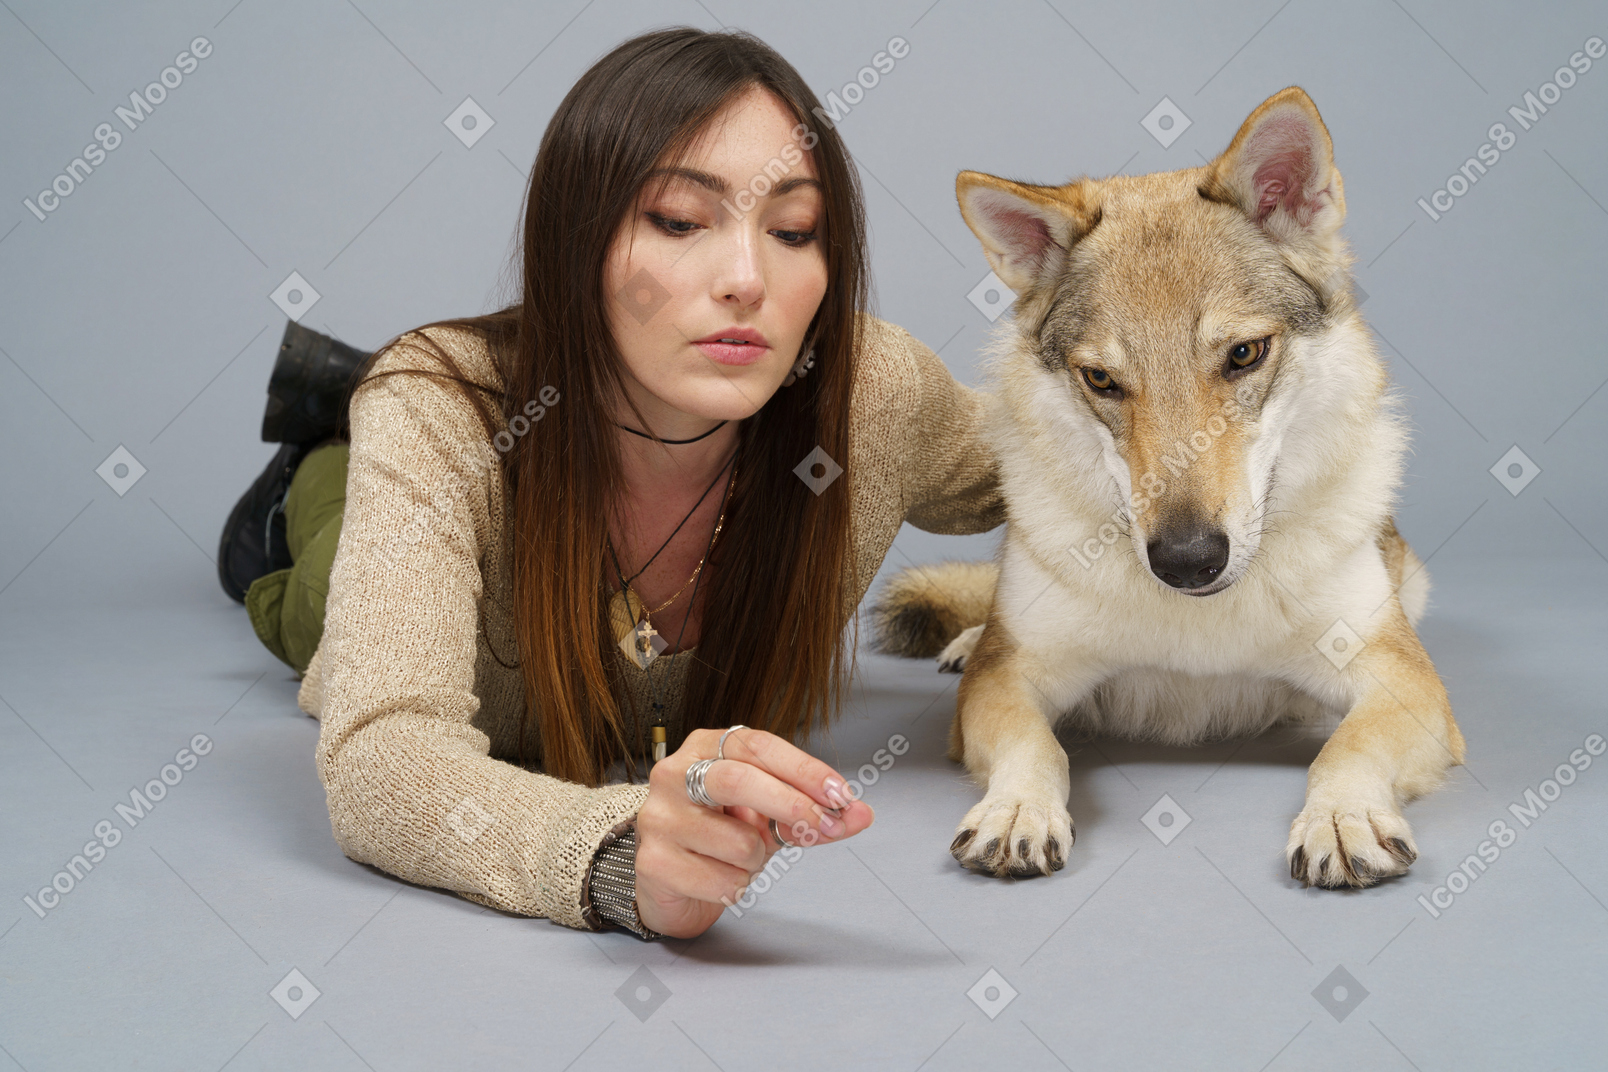 De cuerpo entero de una maestra acostada junto a su perro y mirando a la cámara